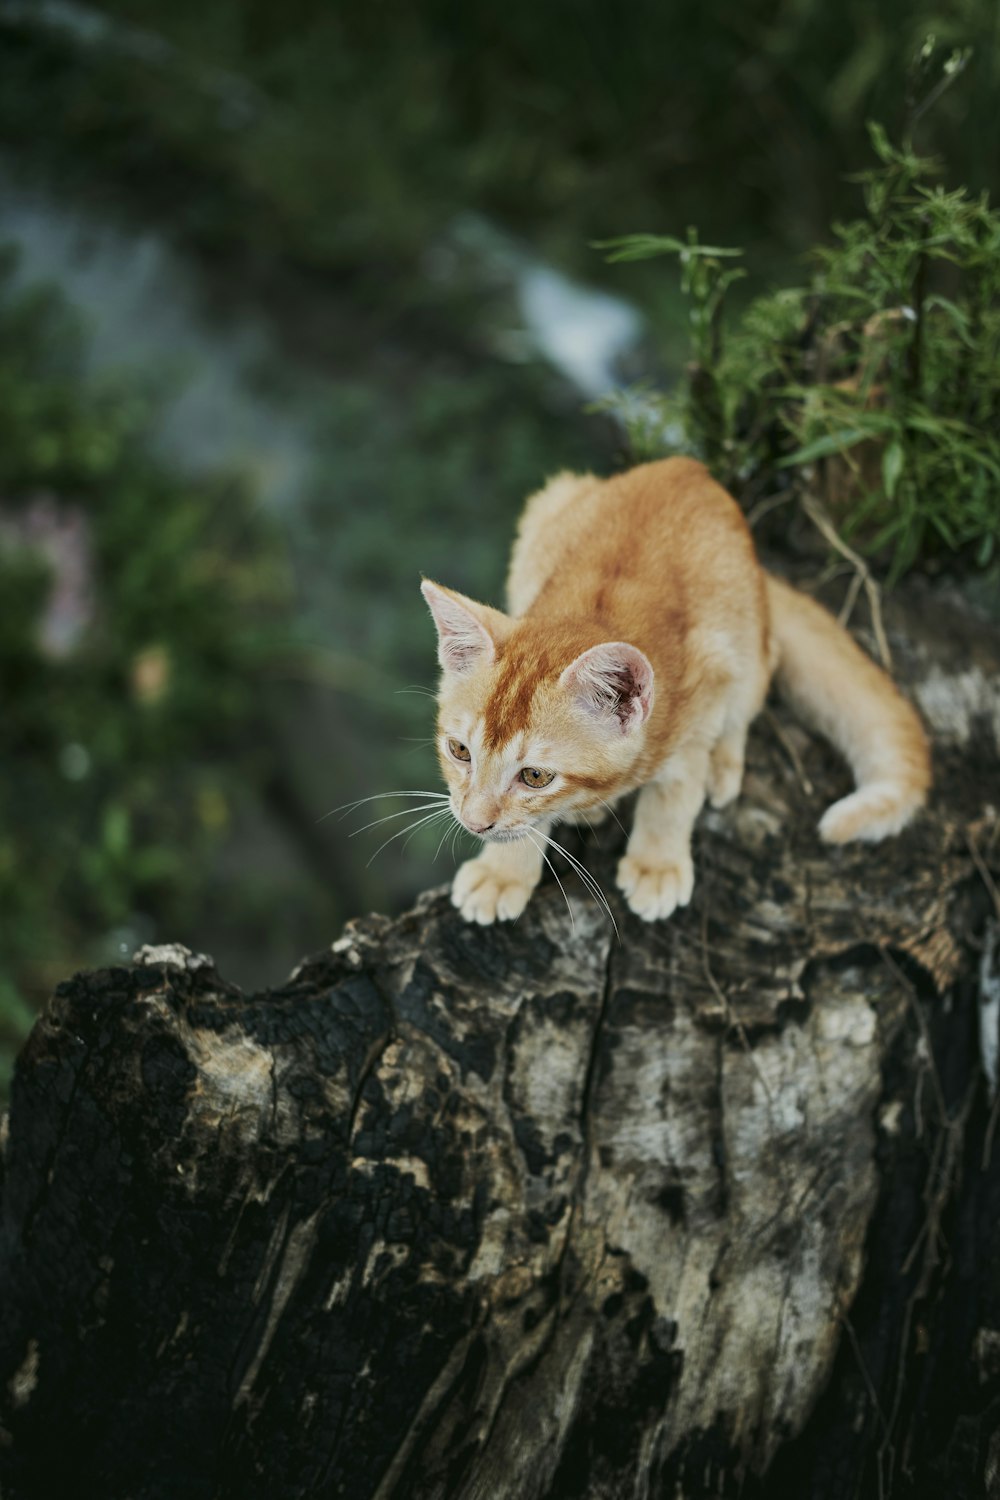 나무 그루터기 위에 앉아있는 주황색과 흰색 고양이